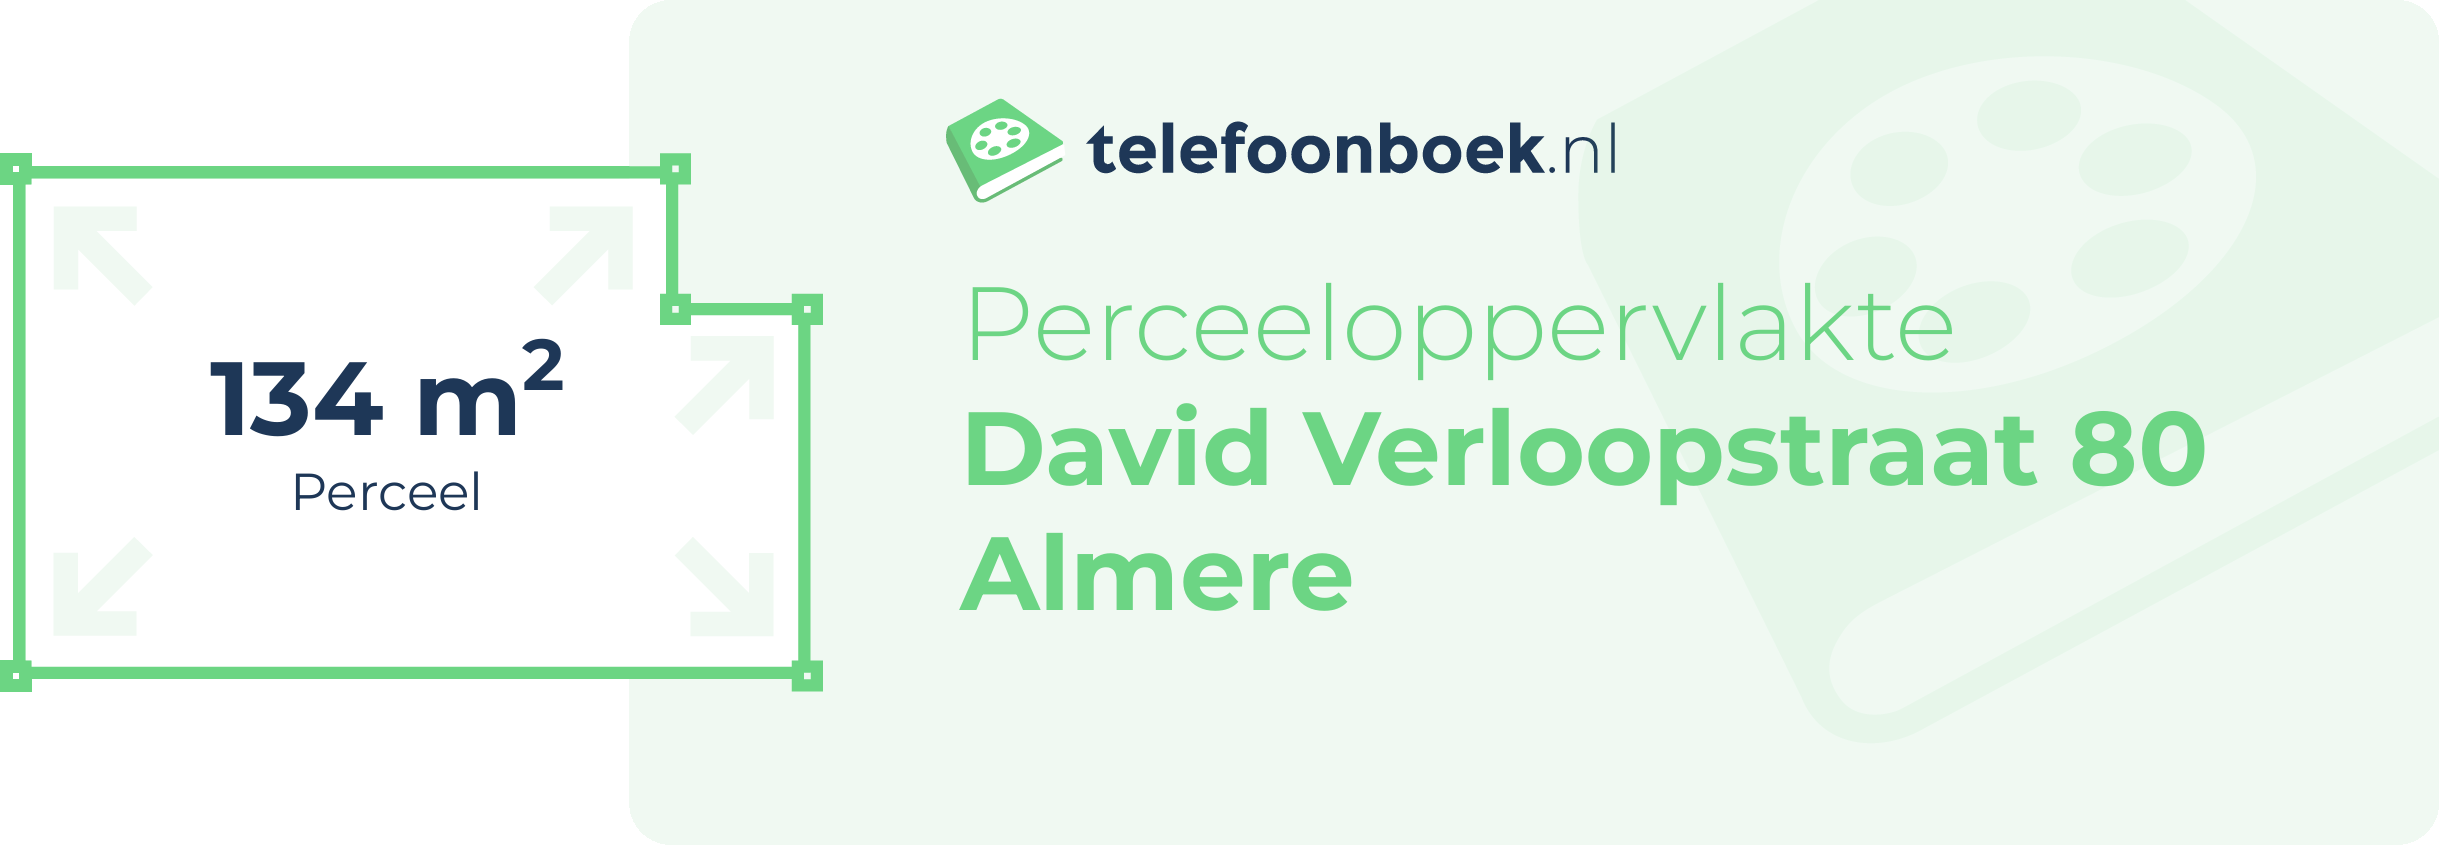 Perceeloppervlakte David Verloopstraat 80 Almere